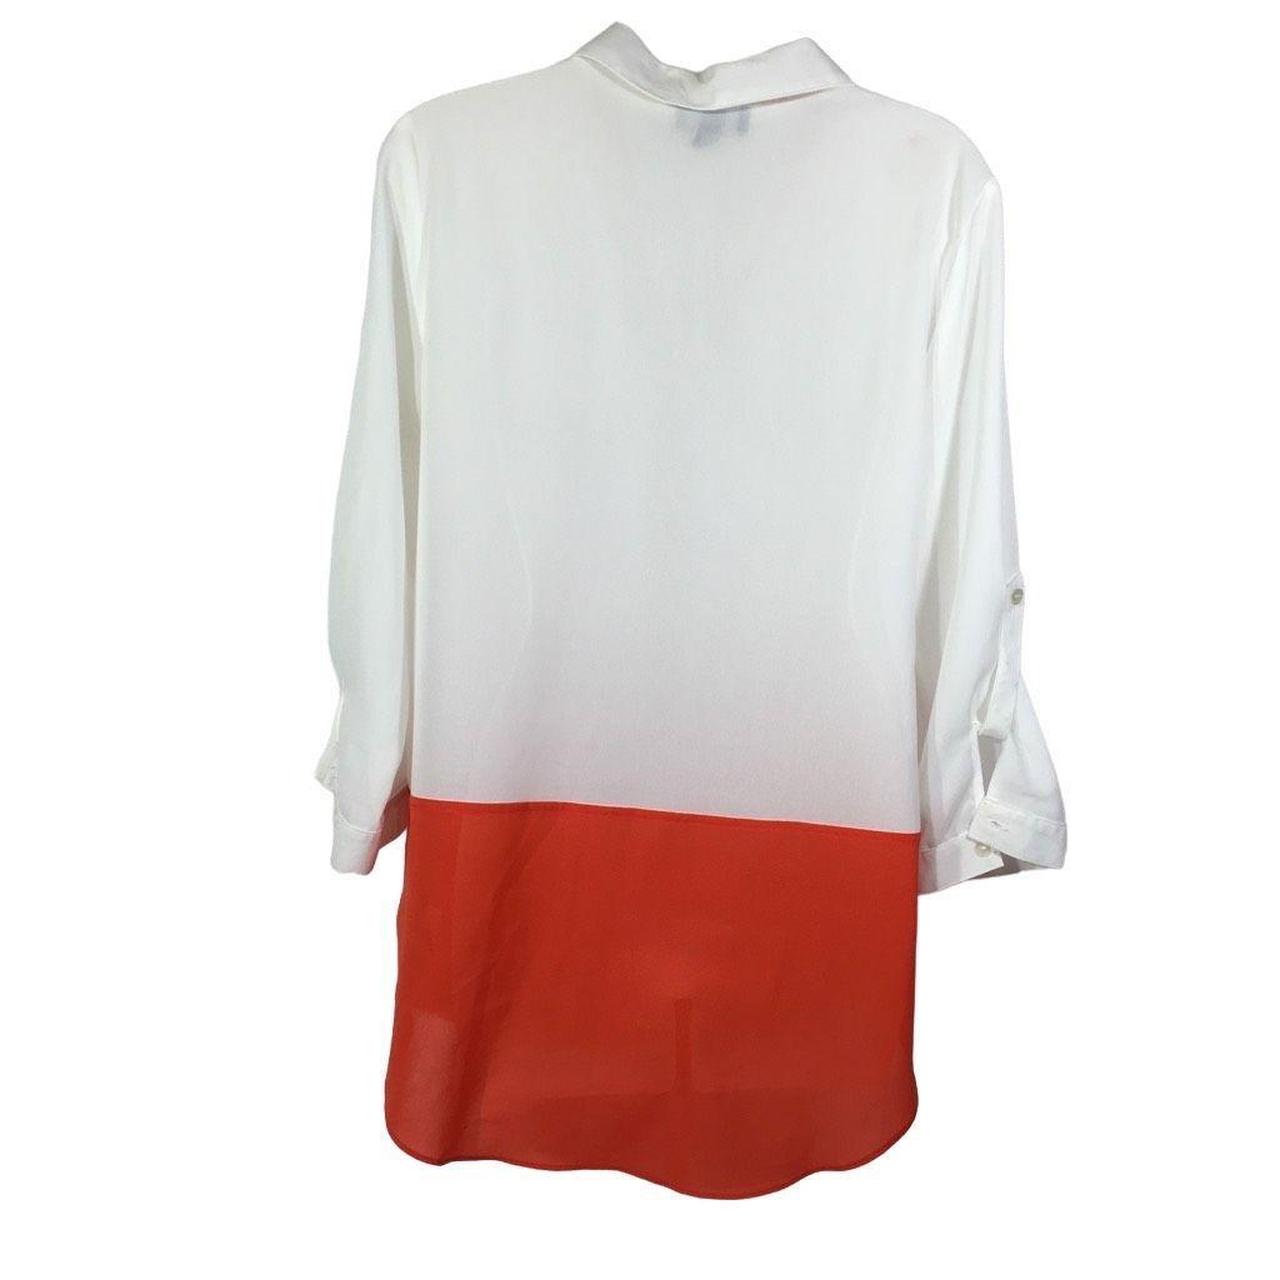 IZ Byer Women's White and Orange Blouse (3)